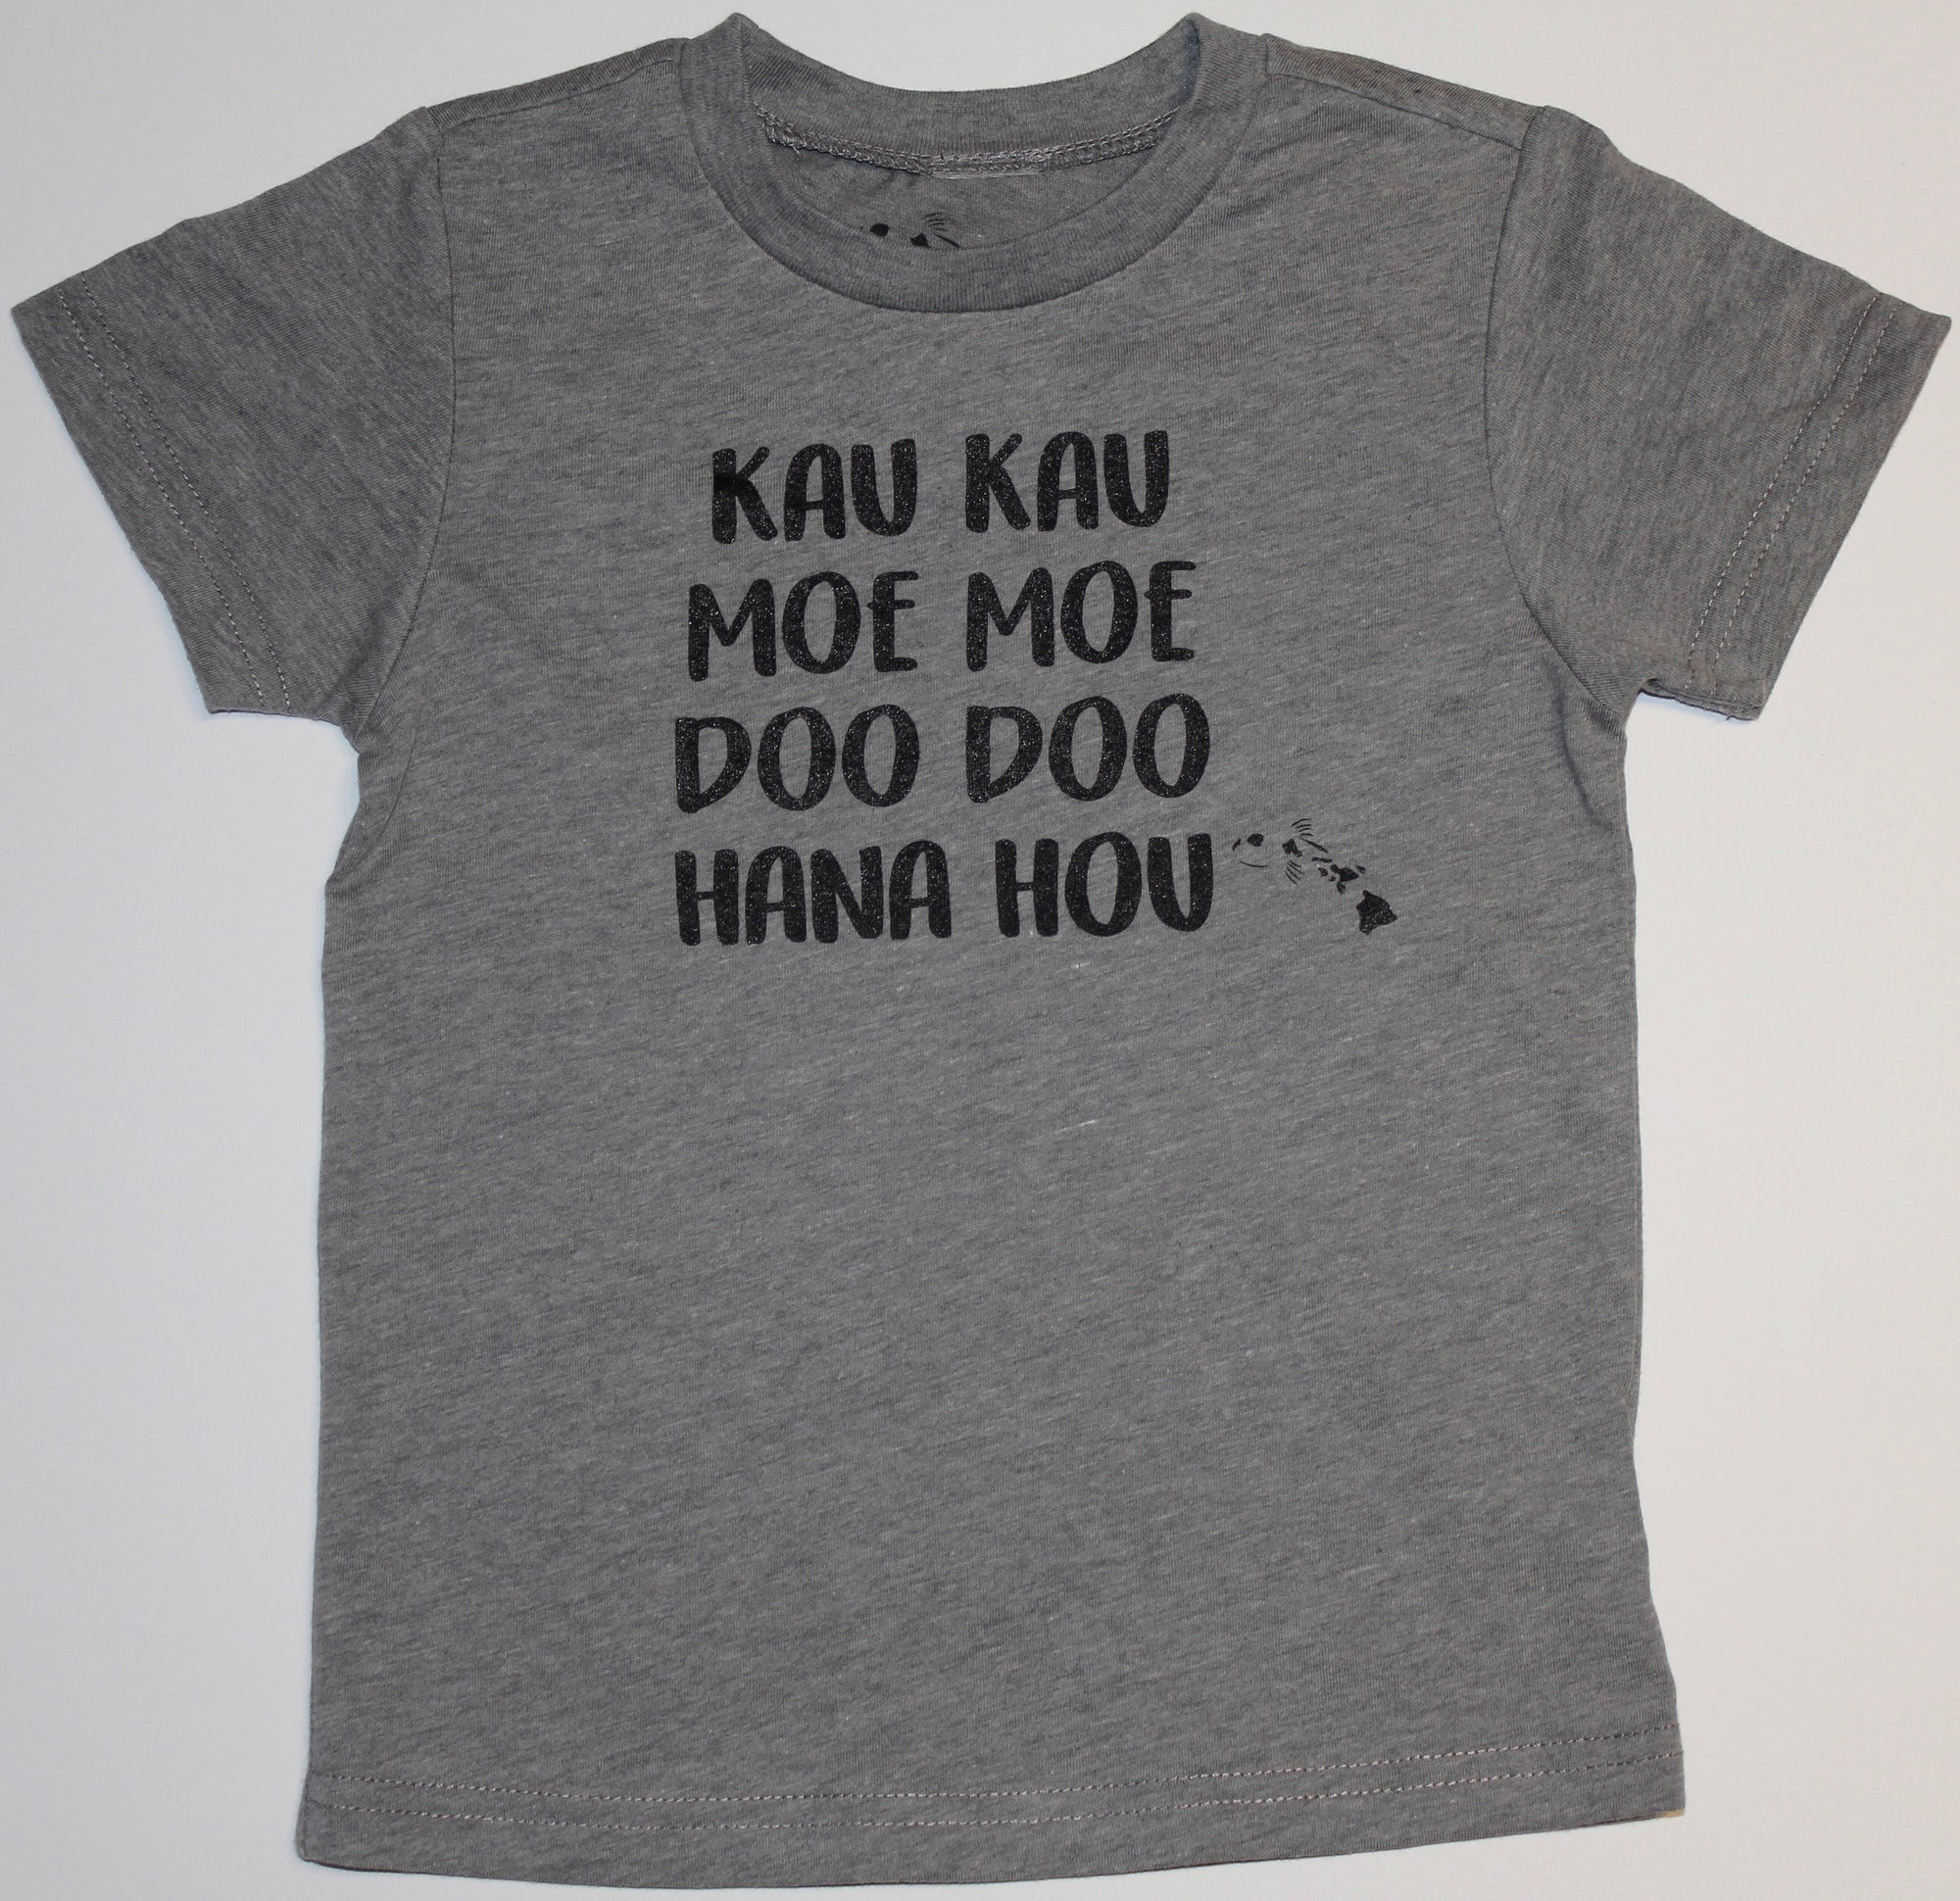 Pop-Up Mākeke - Malia and Company -  Kau Kau, Moe Moe, Doo Doo, Hana Hou Keiki Short Sleeve T-Shirt - Gray